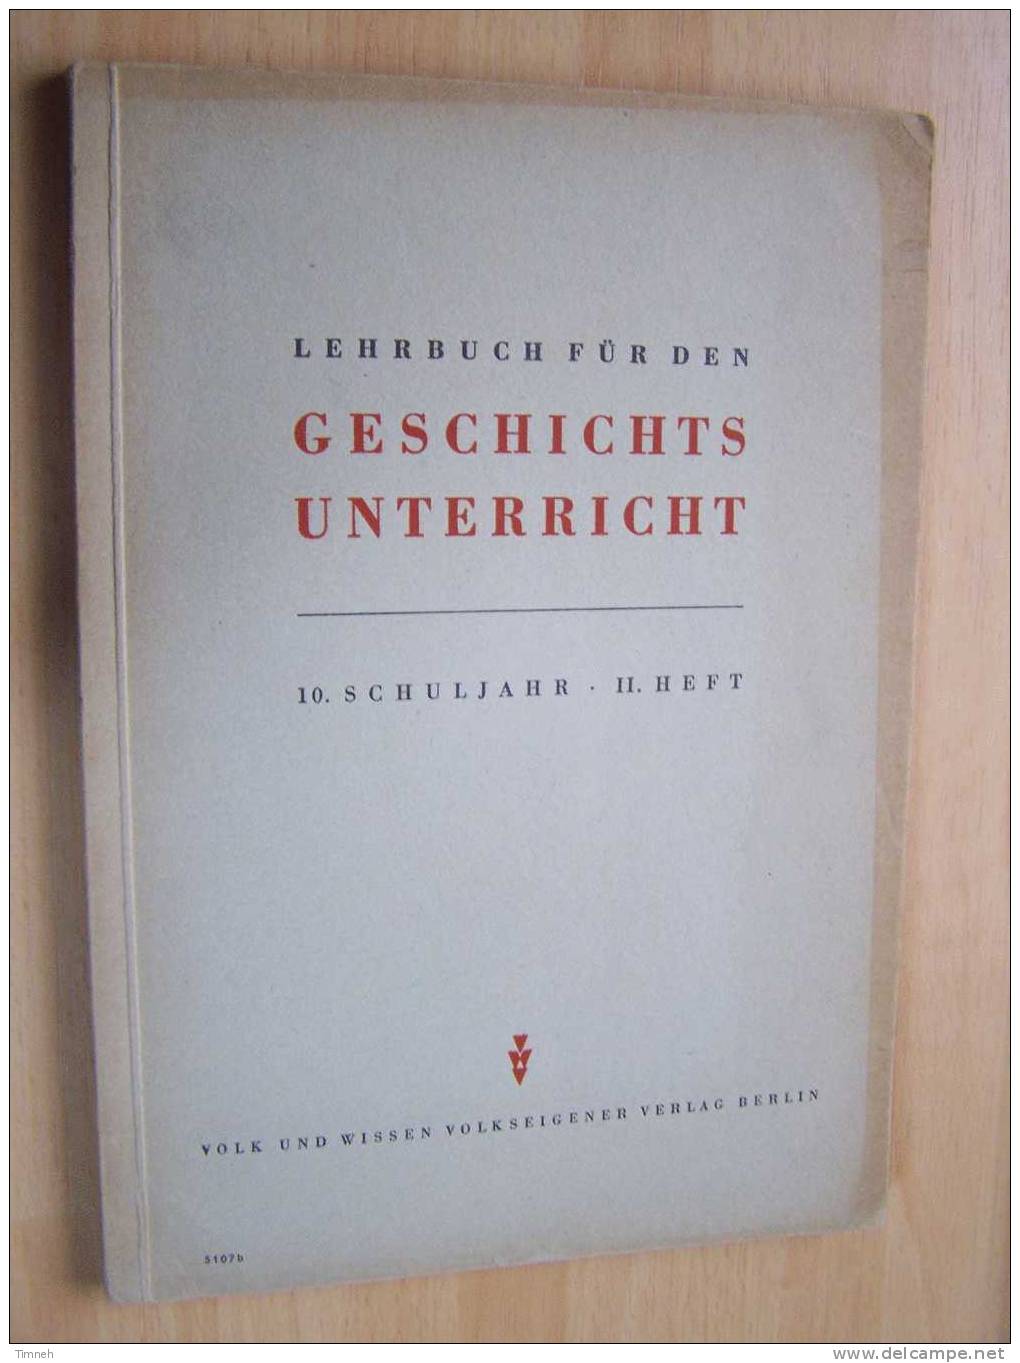 5107b. LEHRBUCH Für Den GESCHICHTS UNTERRICHT -10.SCHULJAHR .II.HEFT-1953 Volk Und Wissen Volkseigener Verlag Berlin - Livres Scolaires